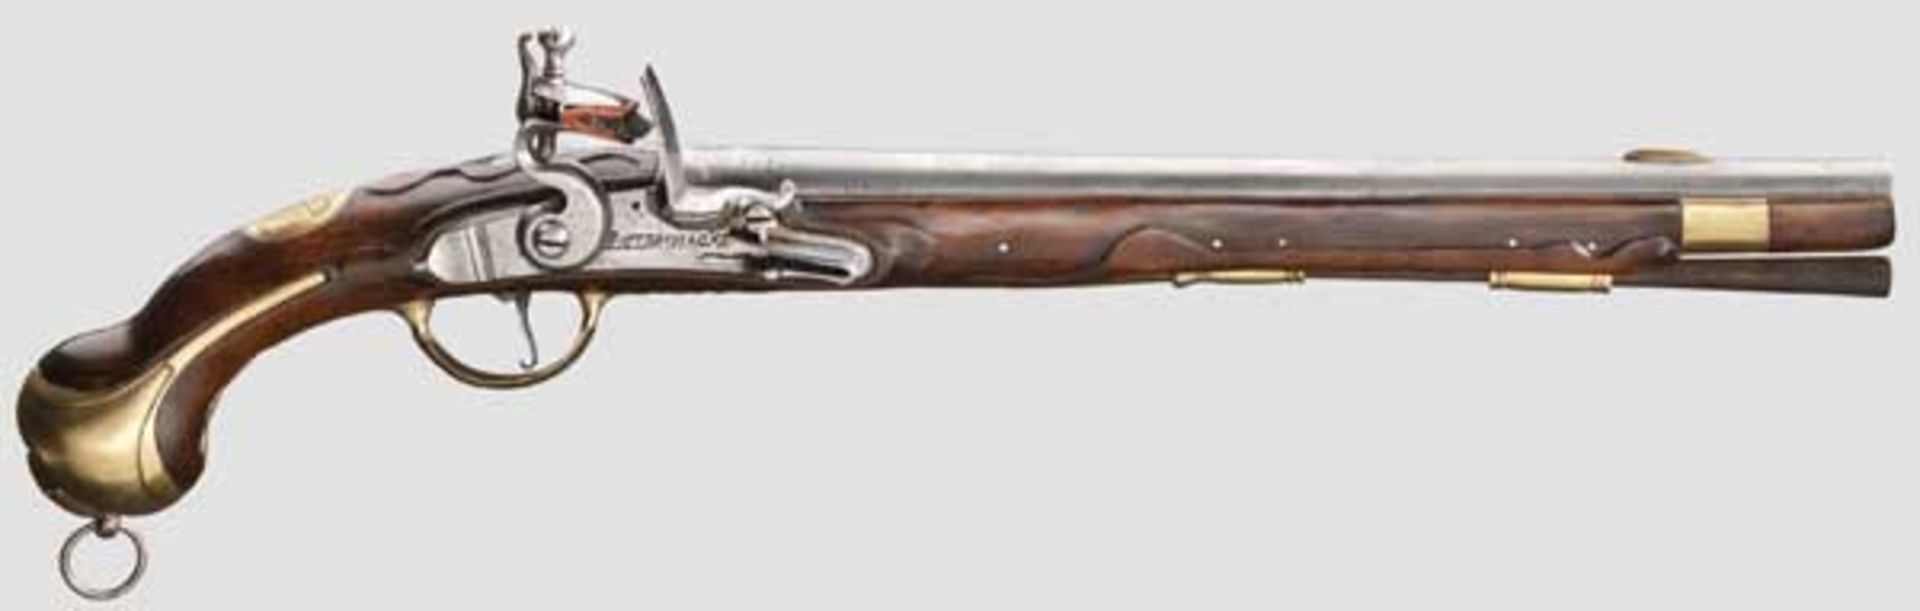 Kavalleriepistole M 1742 Runder, glatter Lauf im Kaliber 17,5 mm mit aufgesetztem Messingkorn.